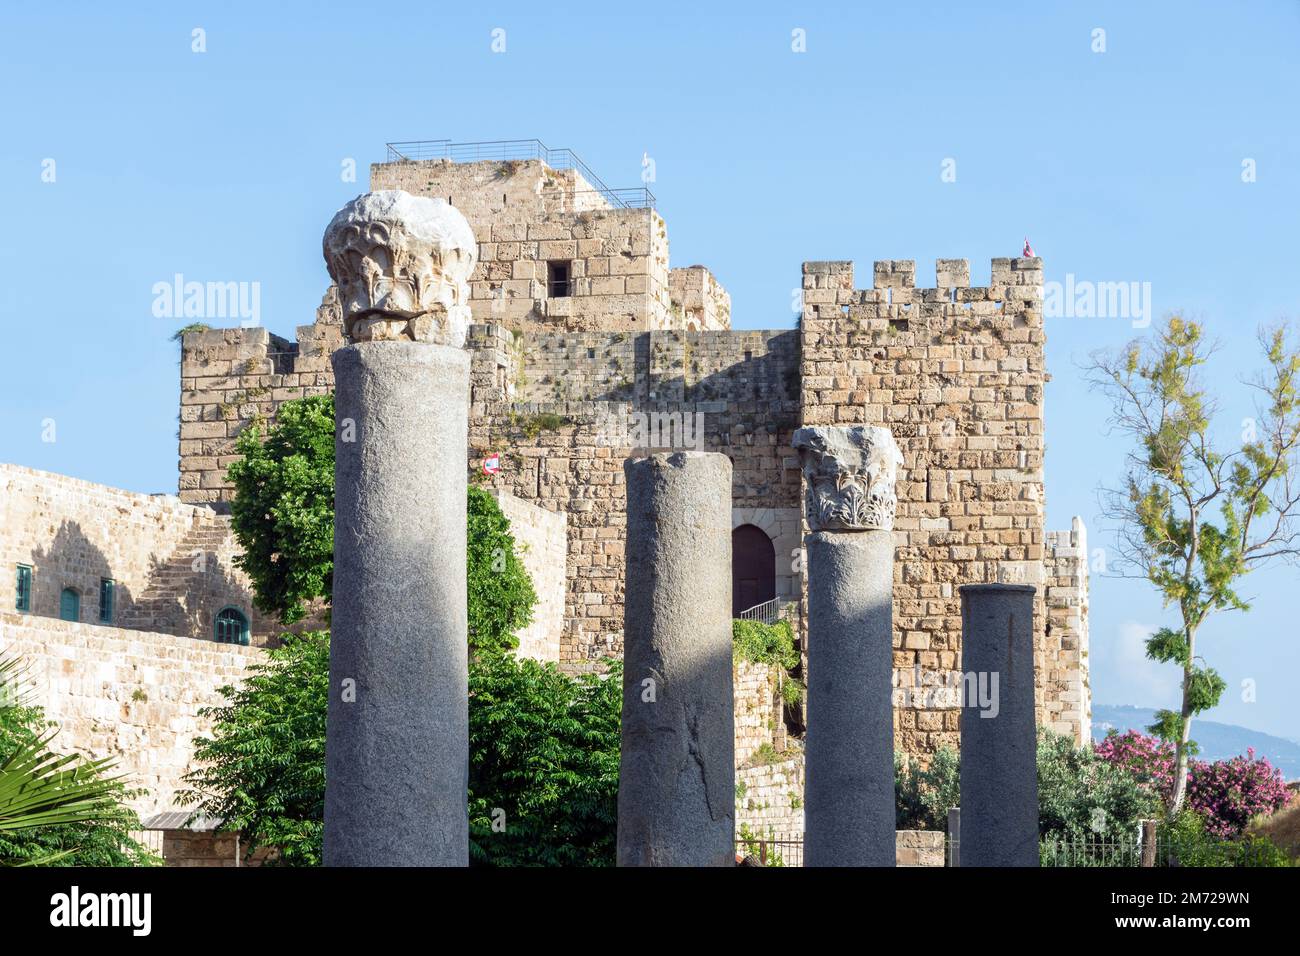 Columnas romanas y ciudadela de Byblos, castillo cruzado, Jbeil, Líbano Foto de stock